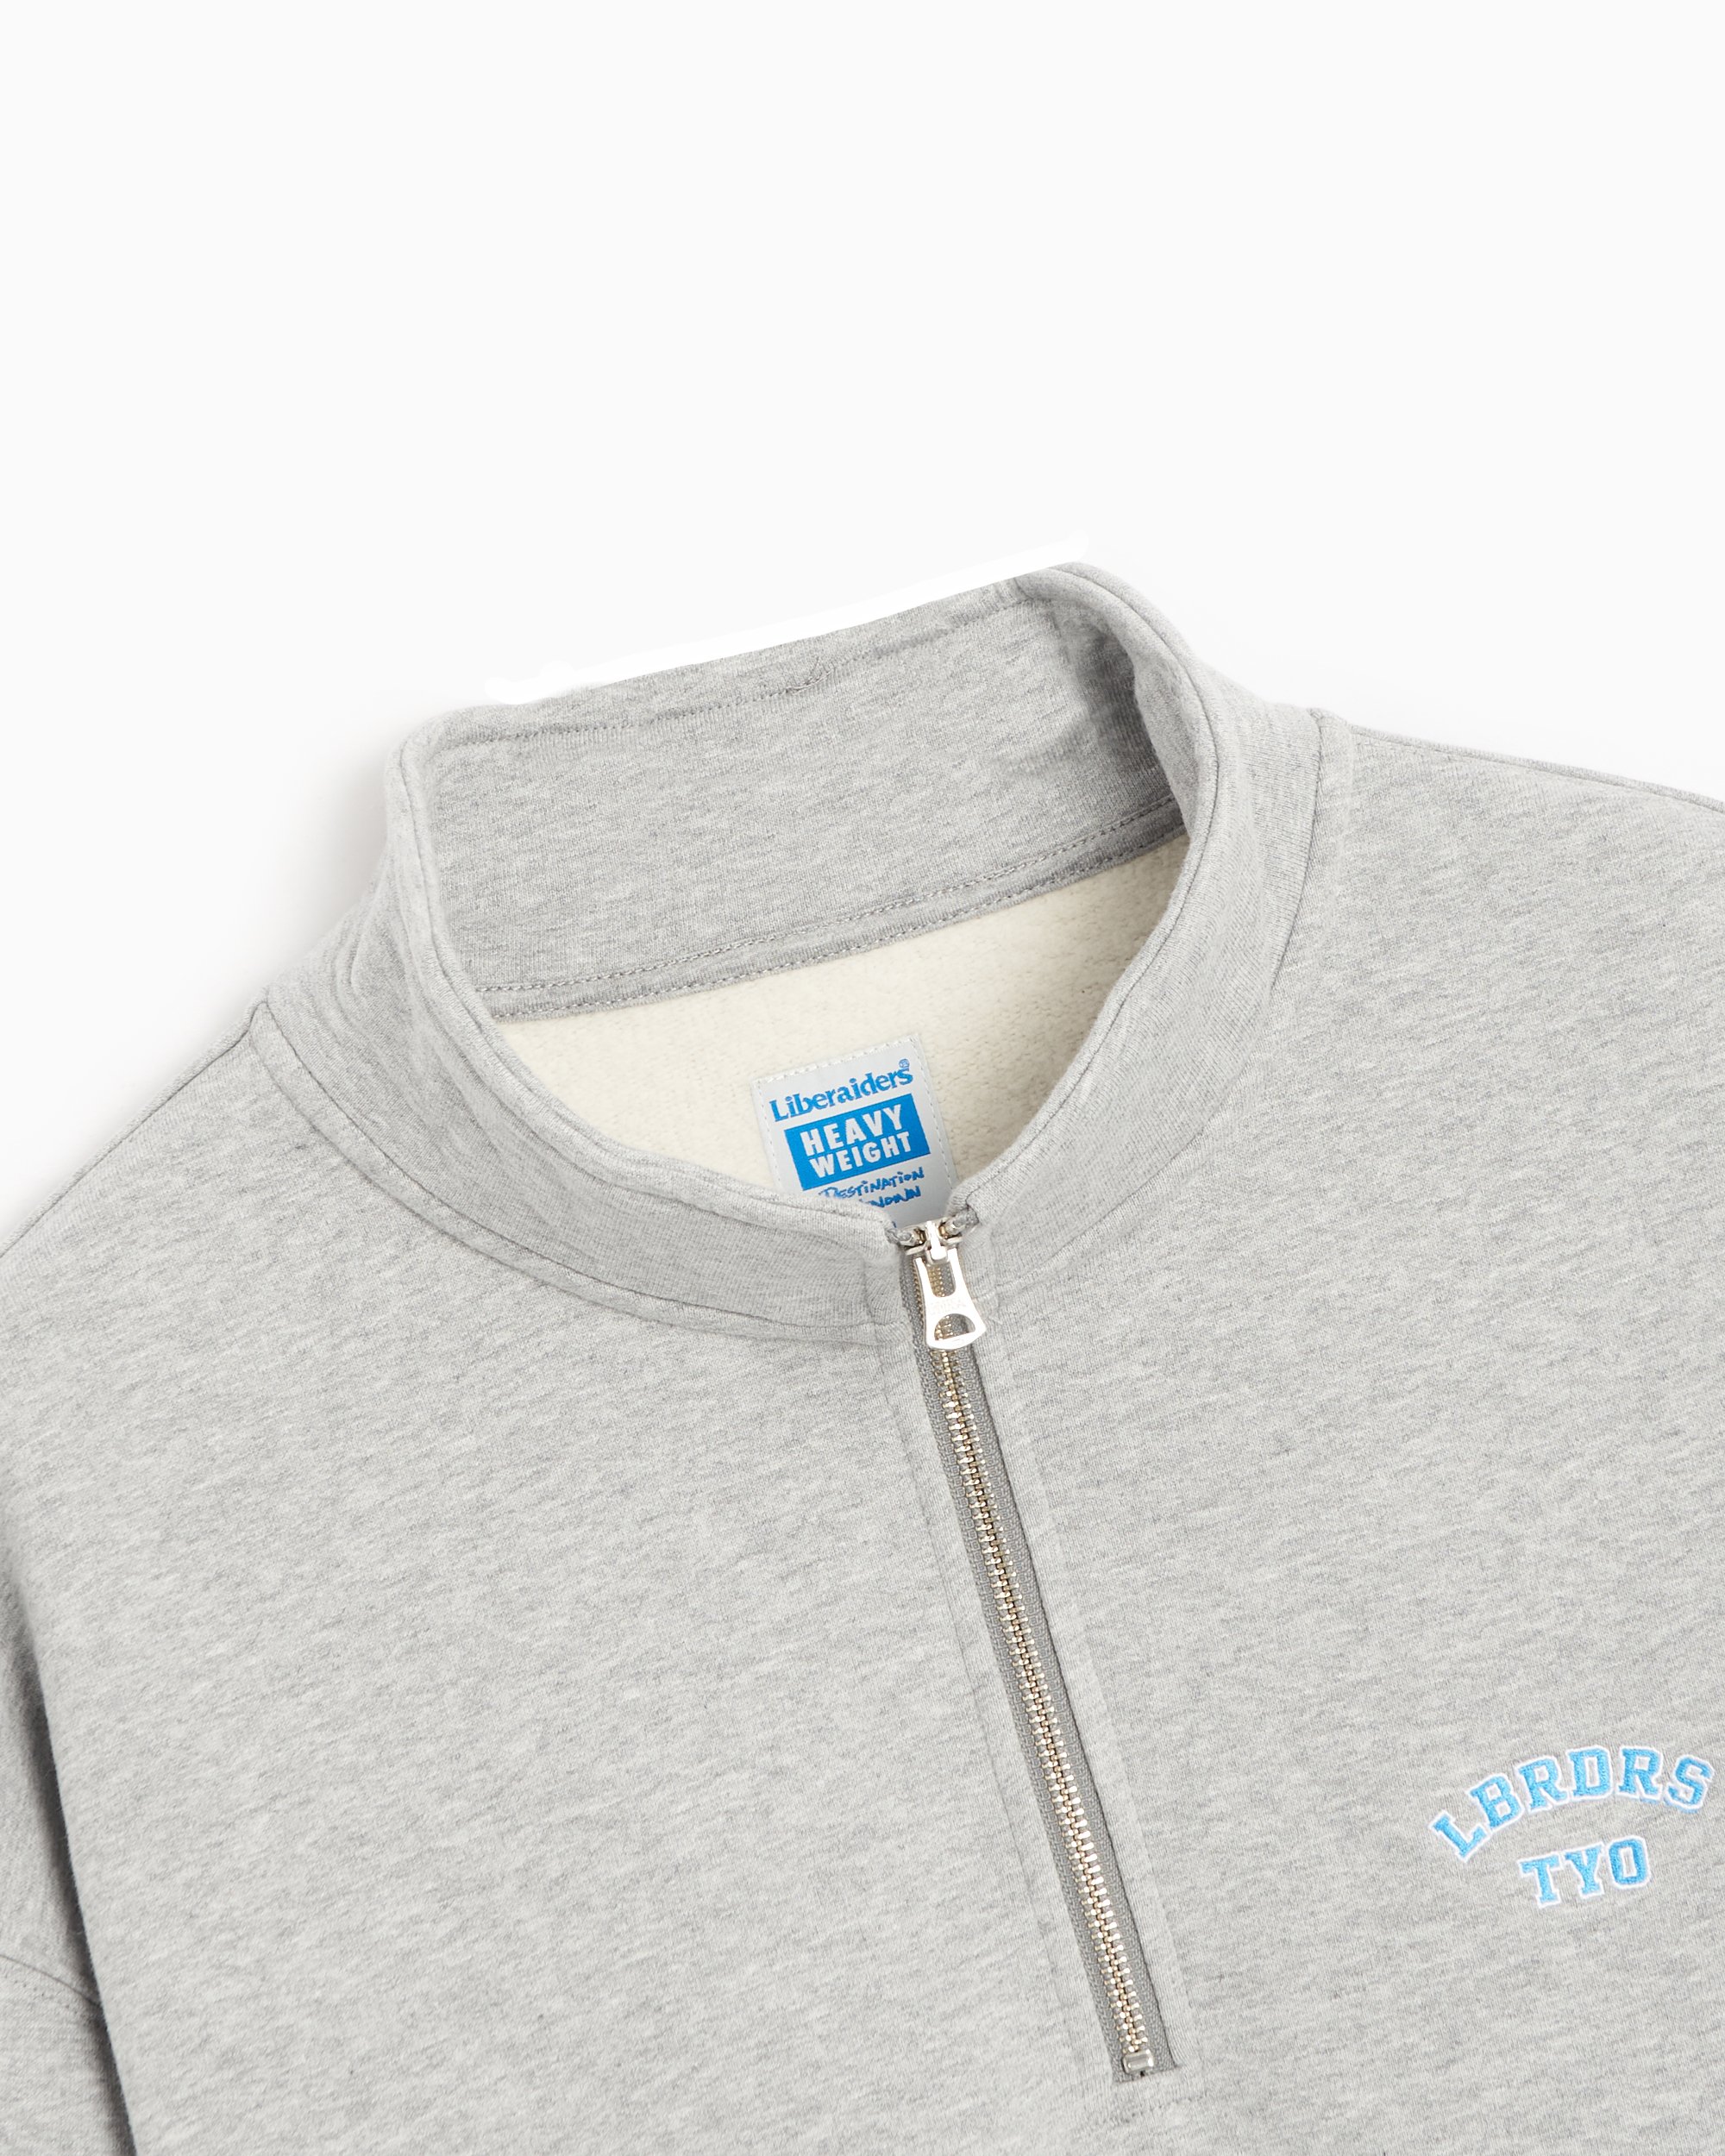 Liberaiders® Men's Heavyweight Fleece Half Zip Sweatshirt Gray